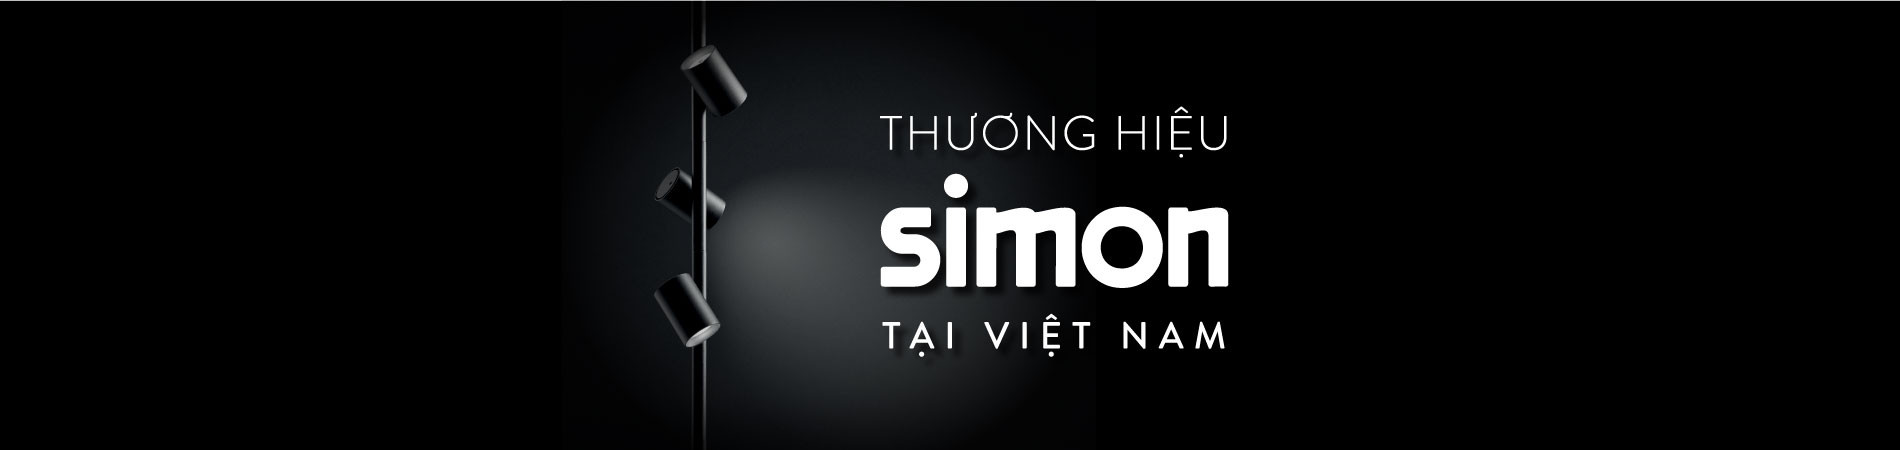 banner nos encanta entender a simon en vietnam